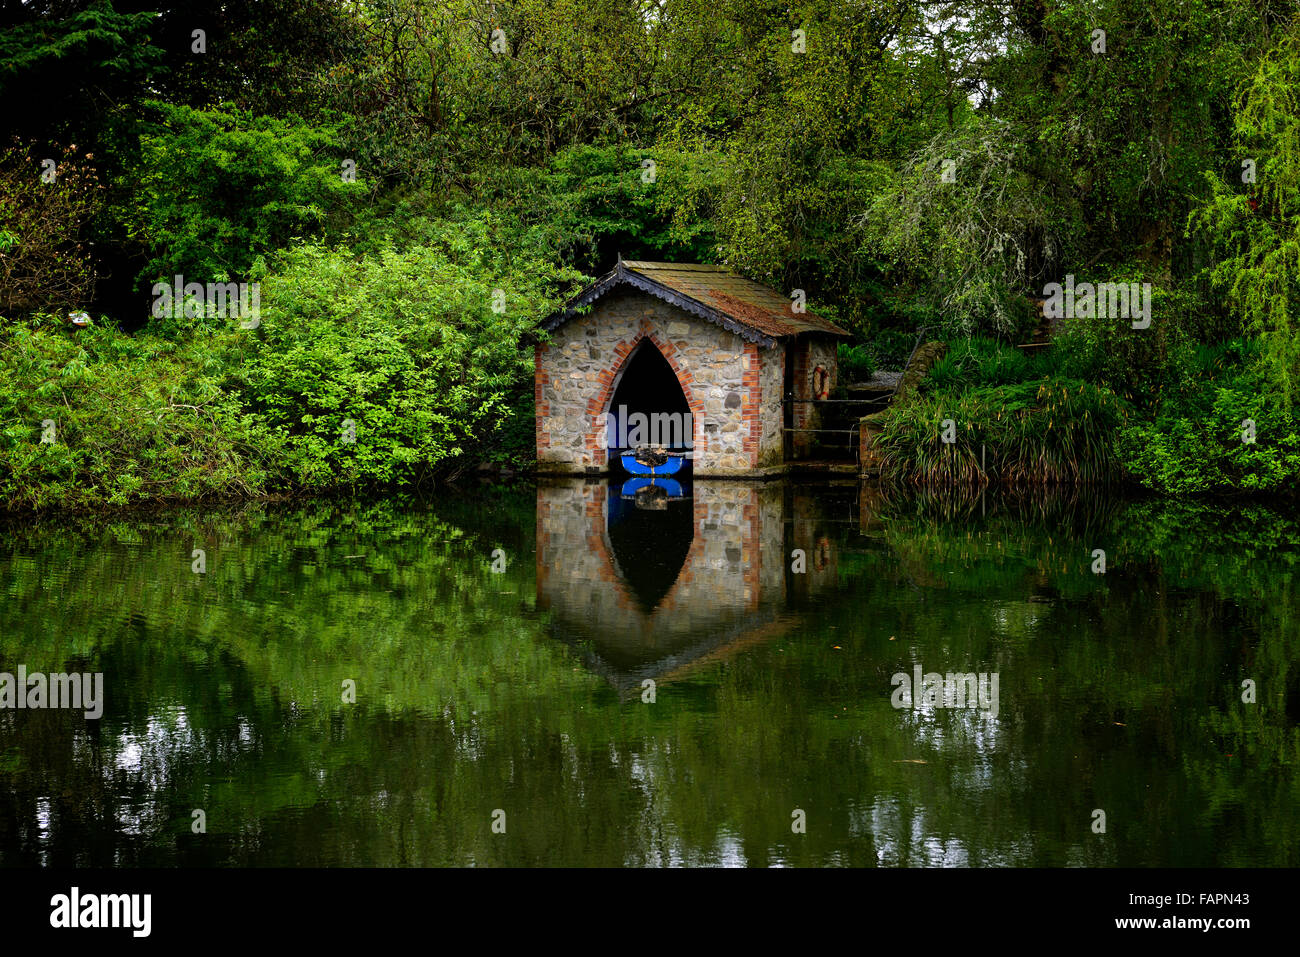 El Boathouse lake pond barco azul ladrillo derramada vivienda reflejan la reflexión todavía tranquilo jardín floral RM característica de jardinería Foto de stock